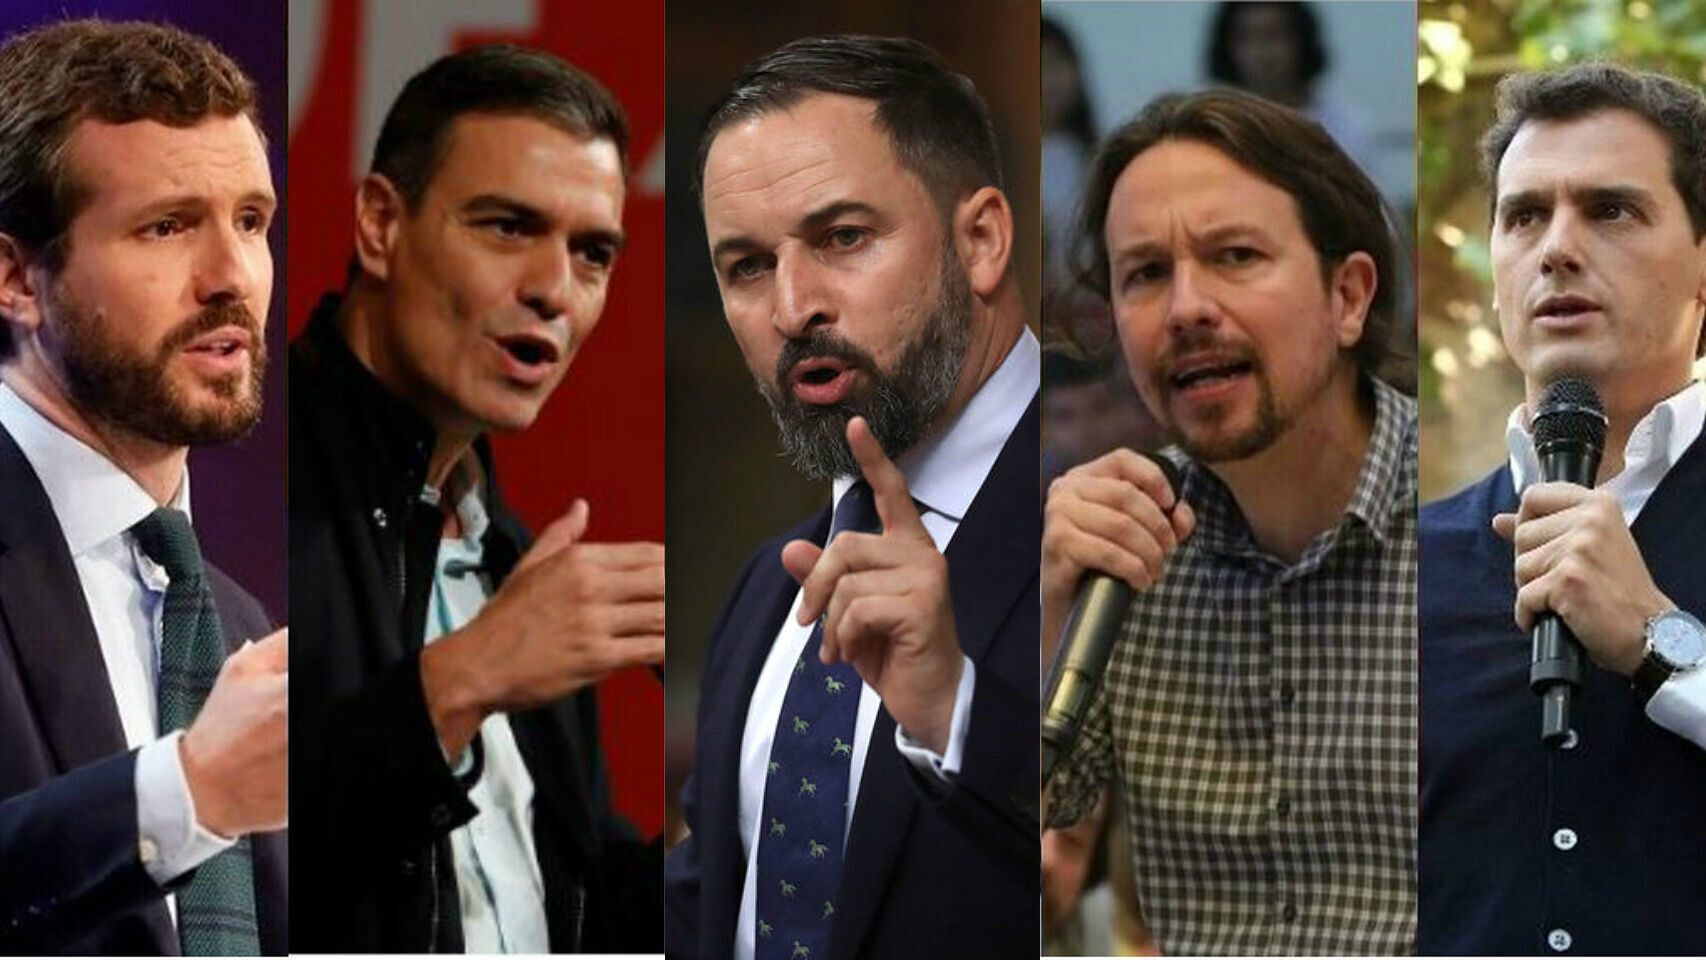 Los cinco candidatos a la presidencia que participan en el debate de este lunes.